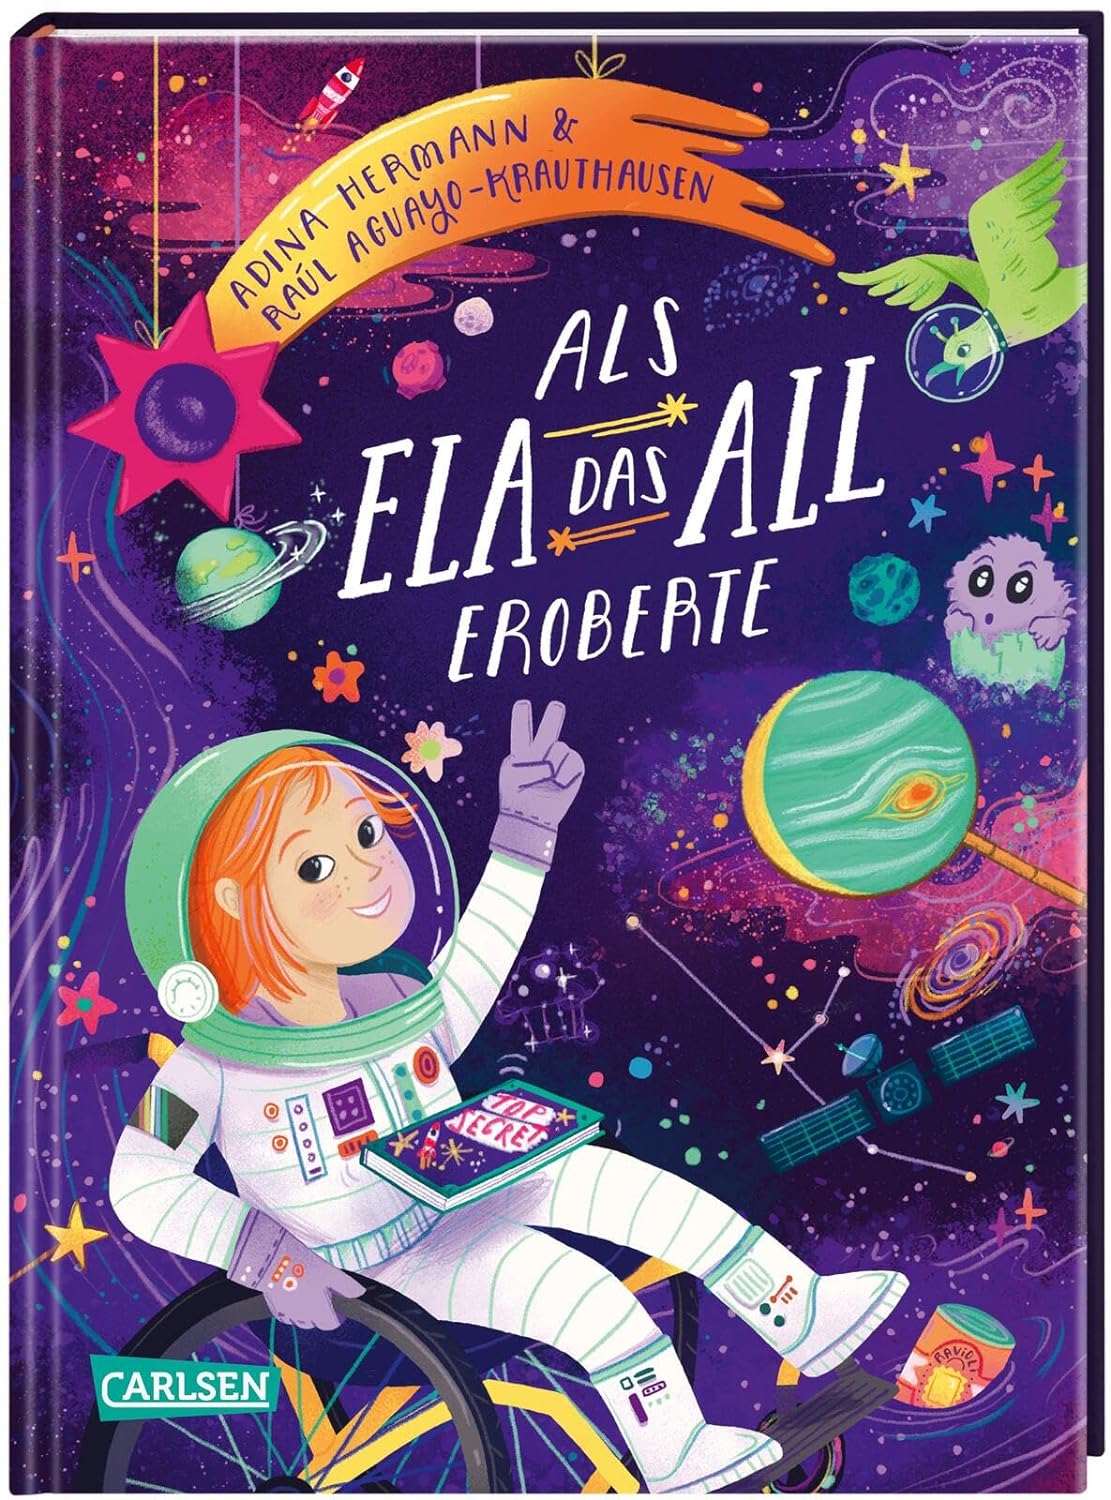 Das Bild zeigt das Titelbild aus dem Buch "Als Ela das All eroberte". In der Szene fliegt Ela im Autronautenanzug durch das All. Der Rollstuhl ist angeschnitten 